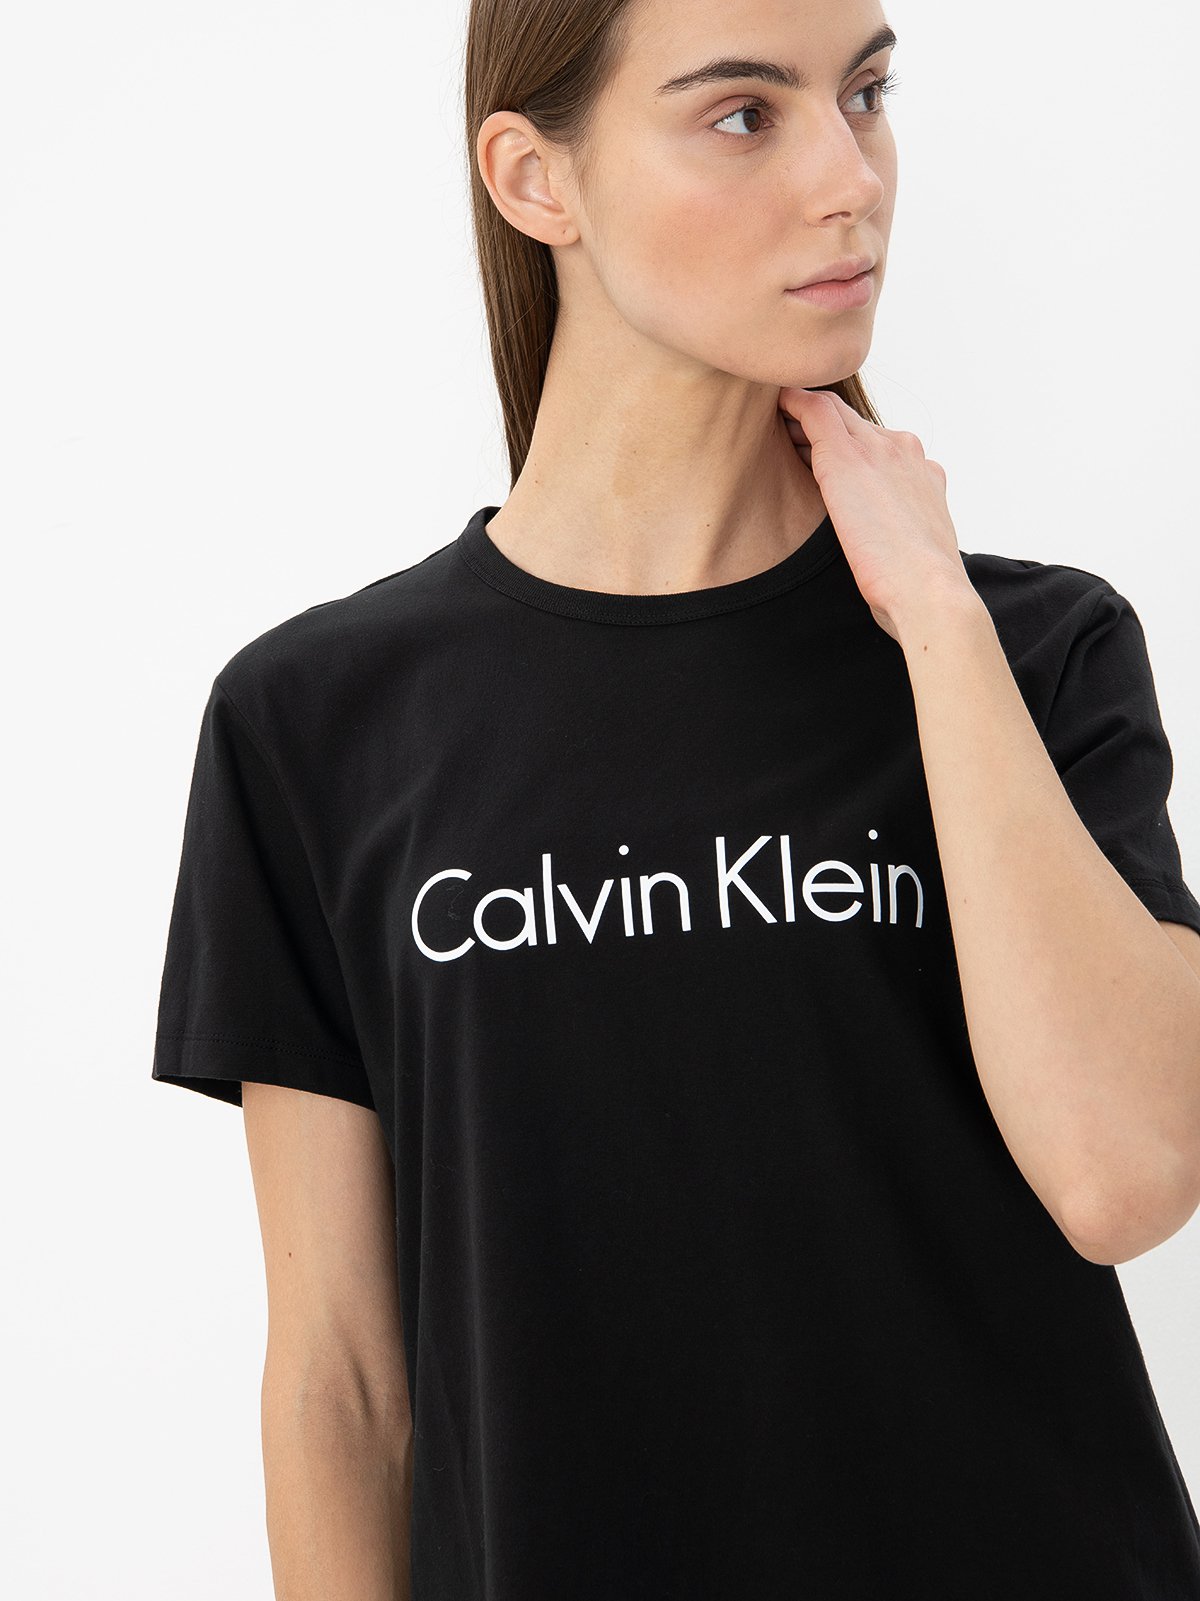 Calvin klein T-shirt Logo 000QS6105E - black